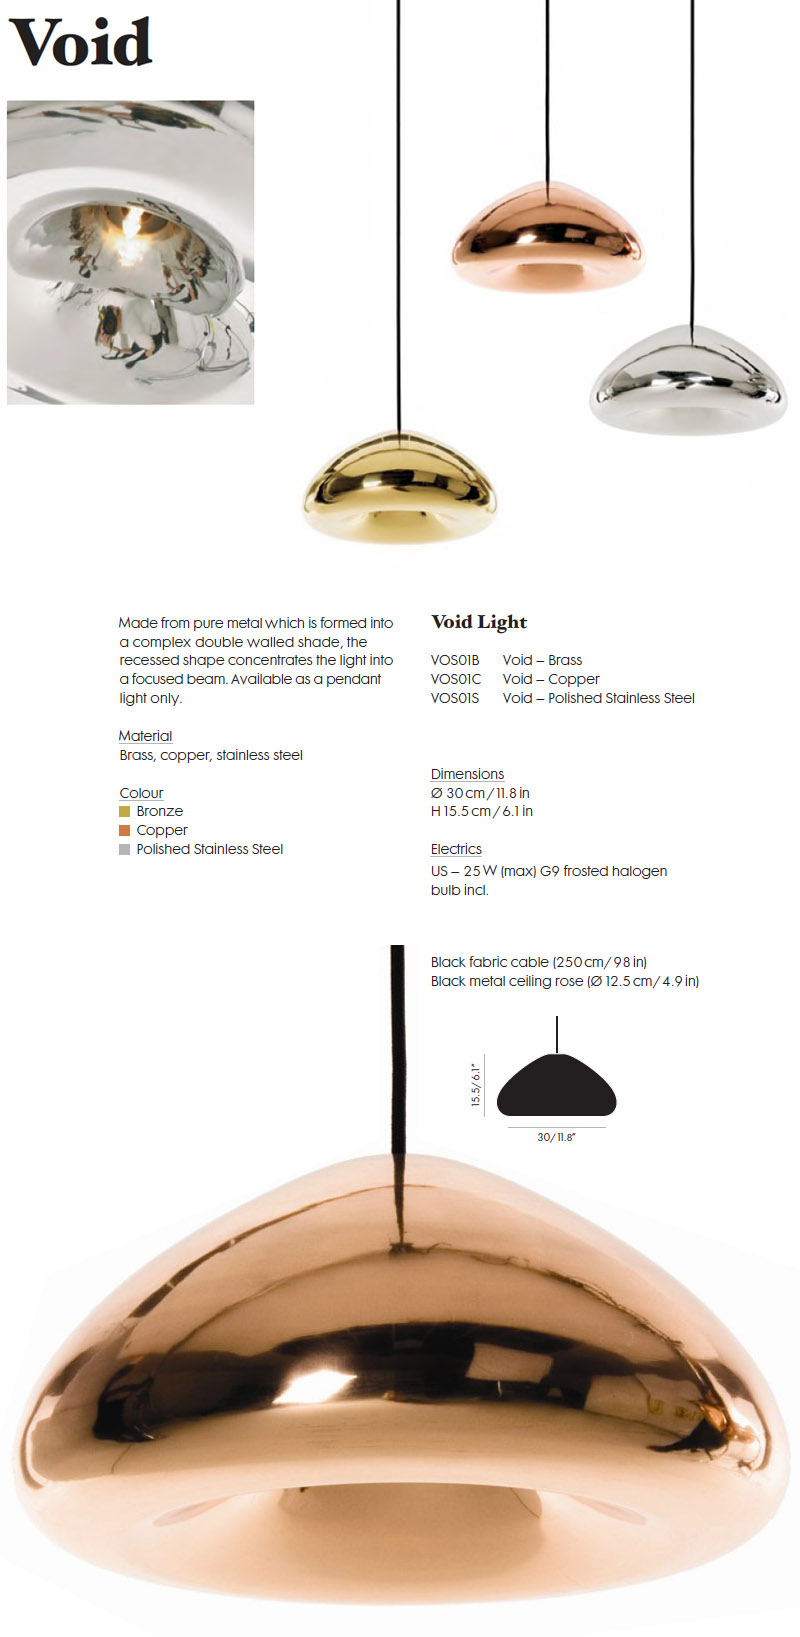 Spectacle Indvending Pigment VOID Light - Copper Pendants - Tom Dixon Pendant Lights: NOVA68.com